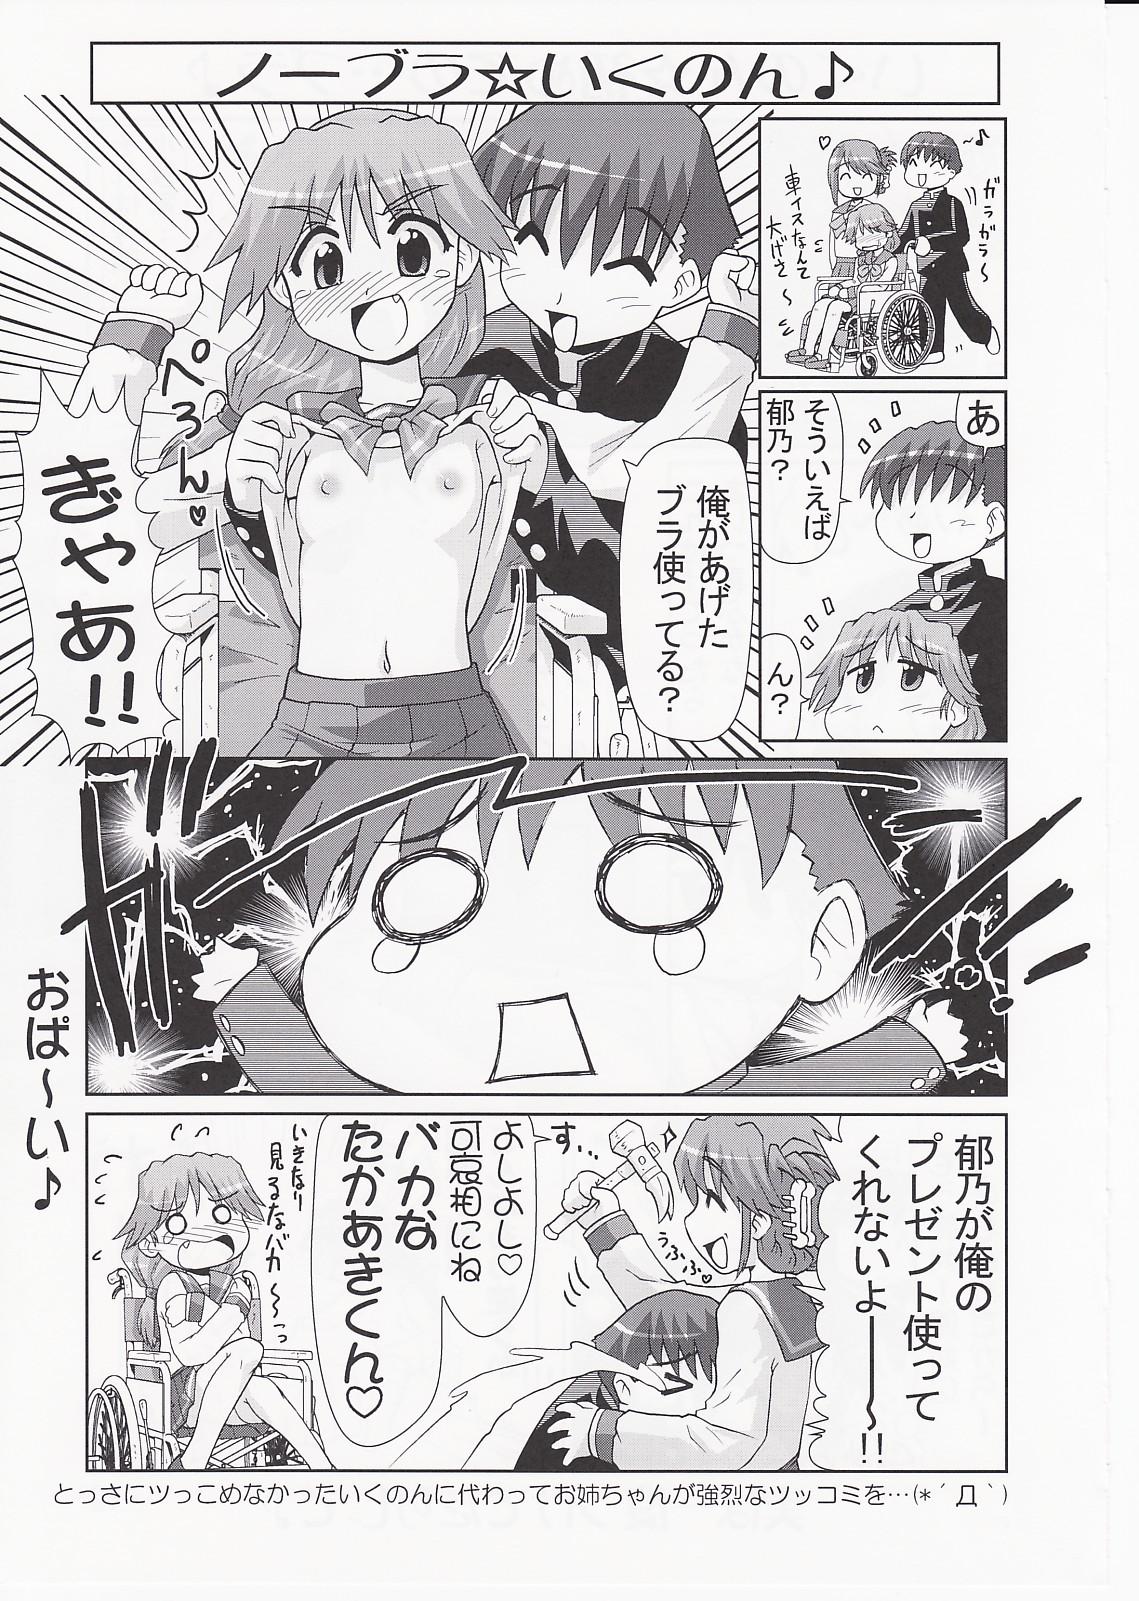 Old Ikunon Manga 3 - Toheart2 Asians - Page 10